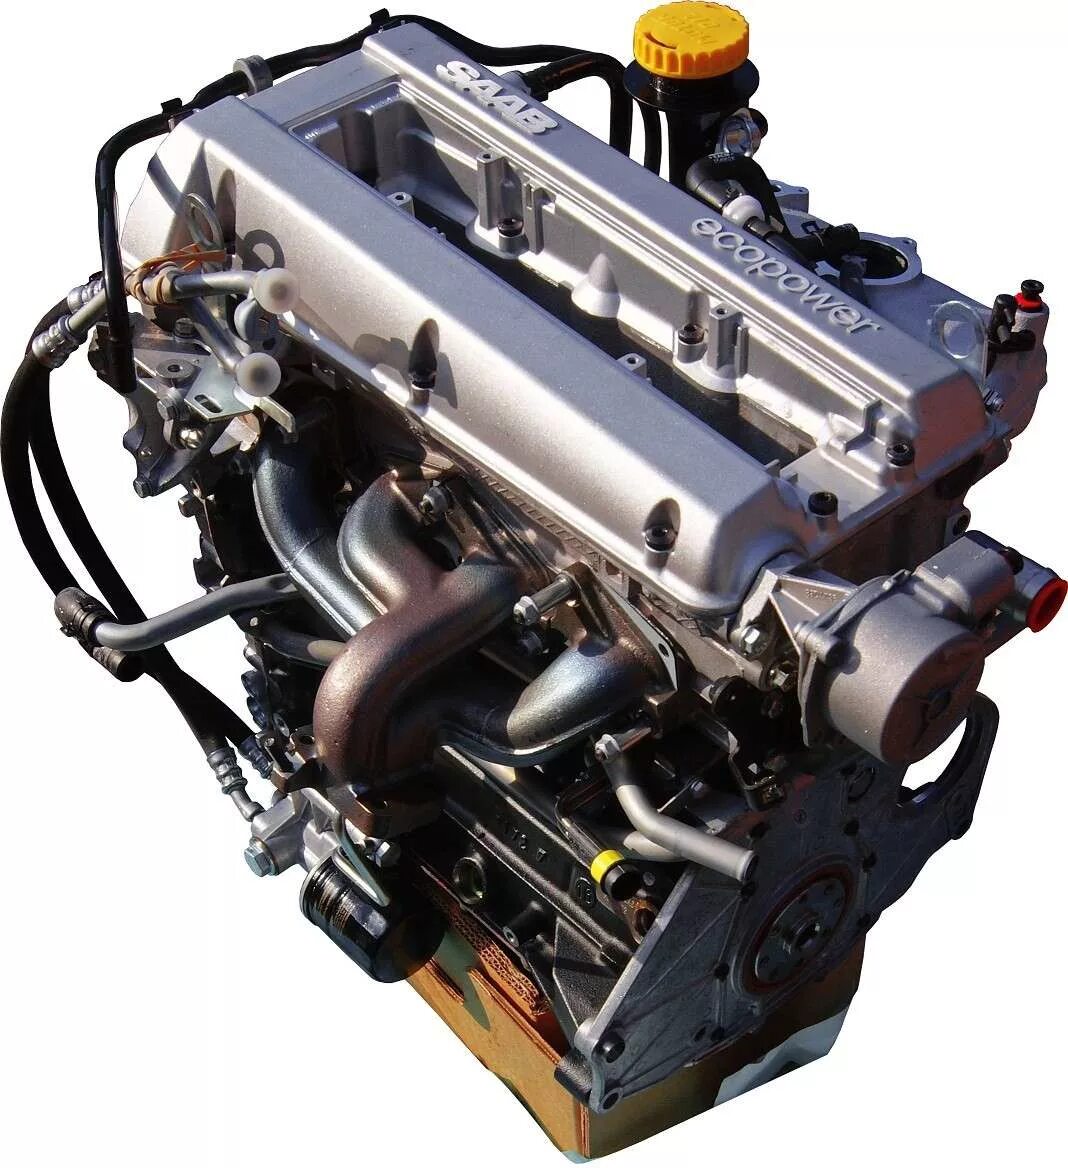 Мотор Сааб 2.3 турбо. Двигатель Сааб 9-5 2.3 турбо. Двигатель Сааб 9-3 2.0 турбо. Saab 9-5 двигатель 2/3.